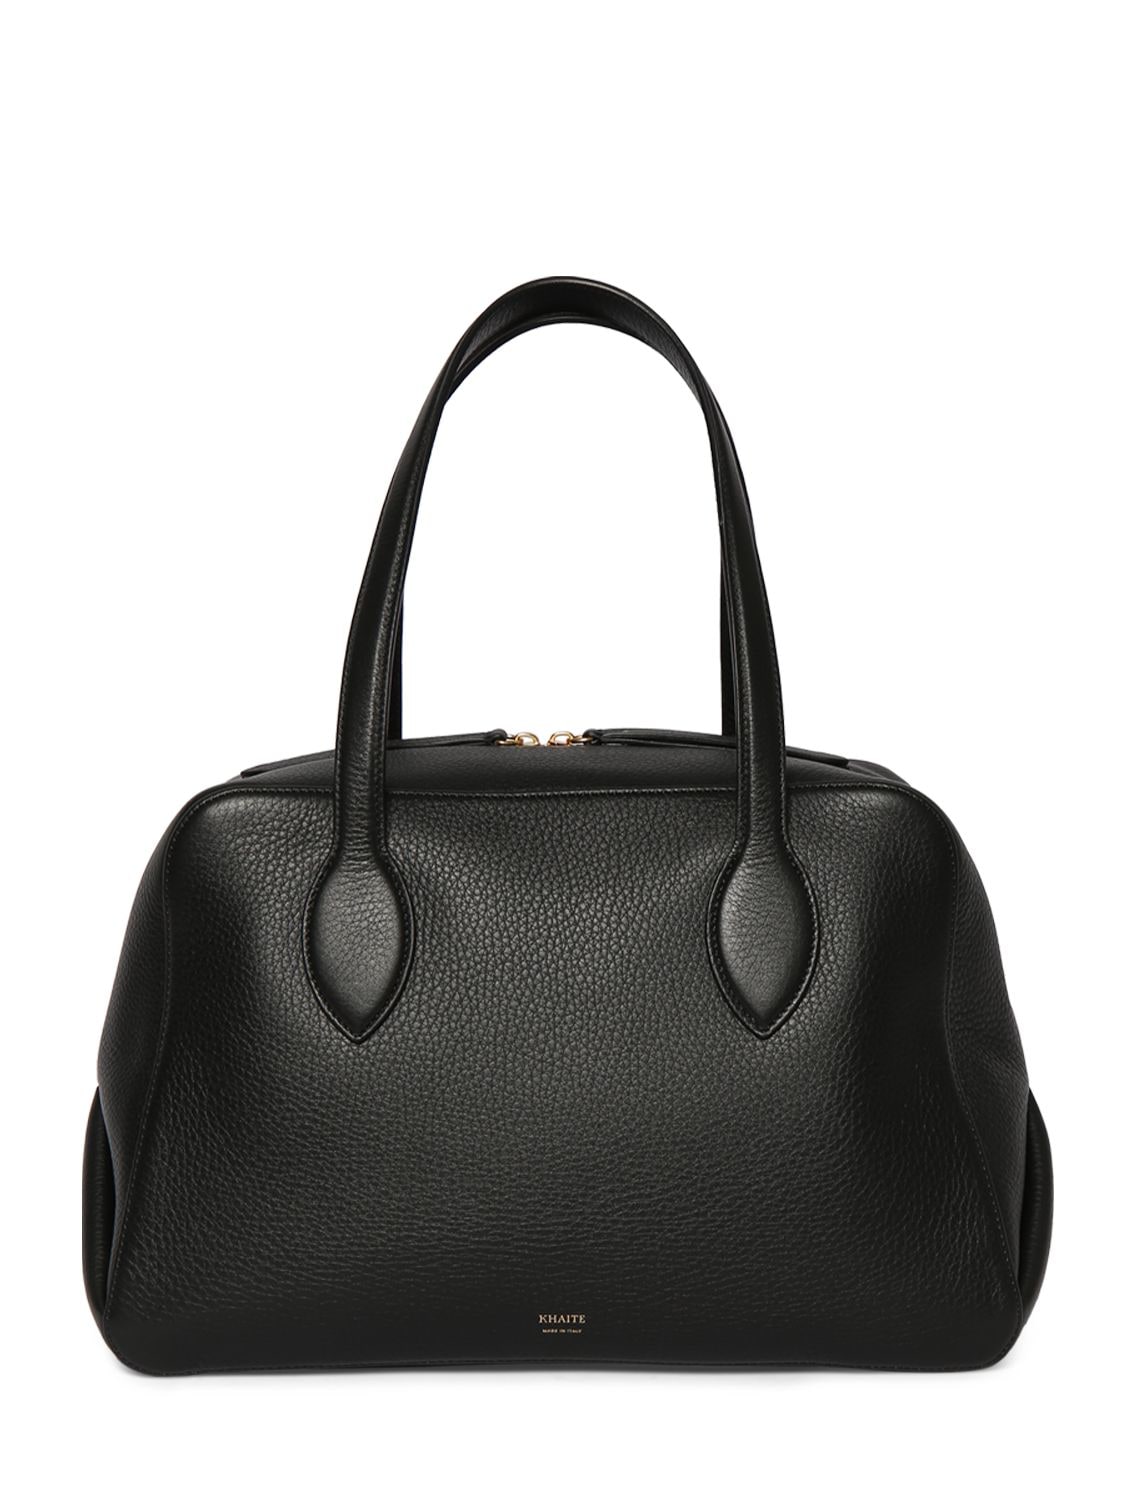 Image of Medium Maeve Leather Handbag